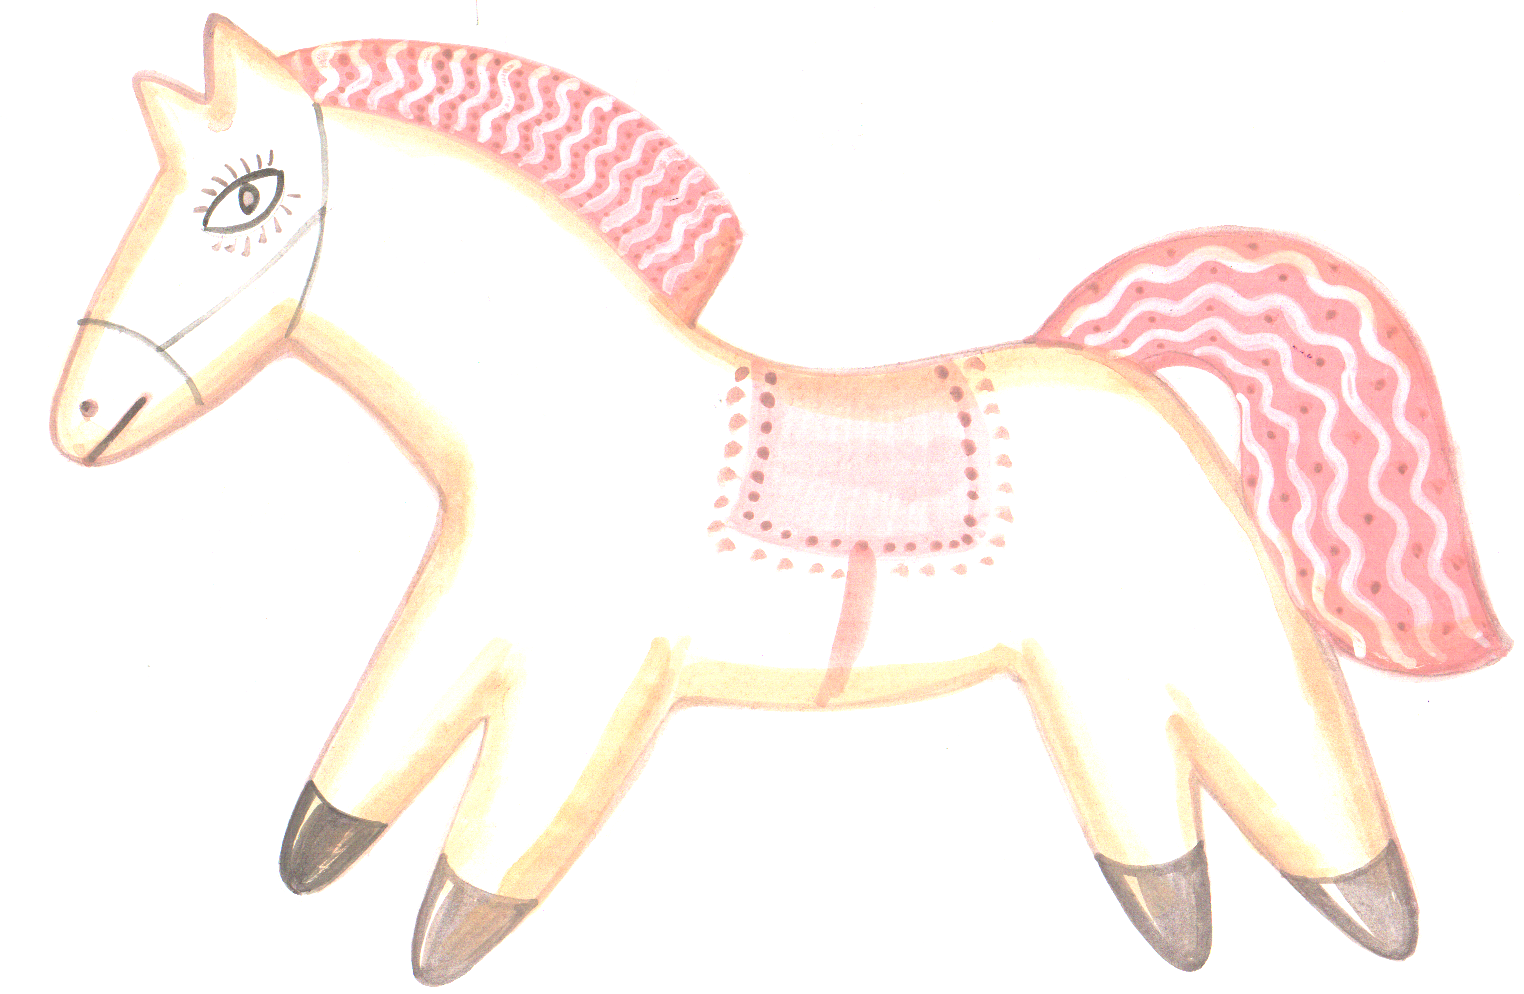 Санька конь с розовой гривой внешность. Астафьев конь с розовой гривой пряник. Розовый пряник Астафьев. Астафьев конь с розовой гривой иллюстрации. Астафьев пряник с розовой гривой.